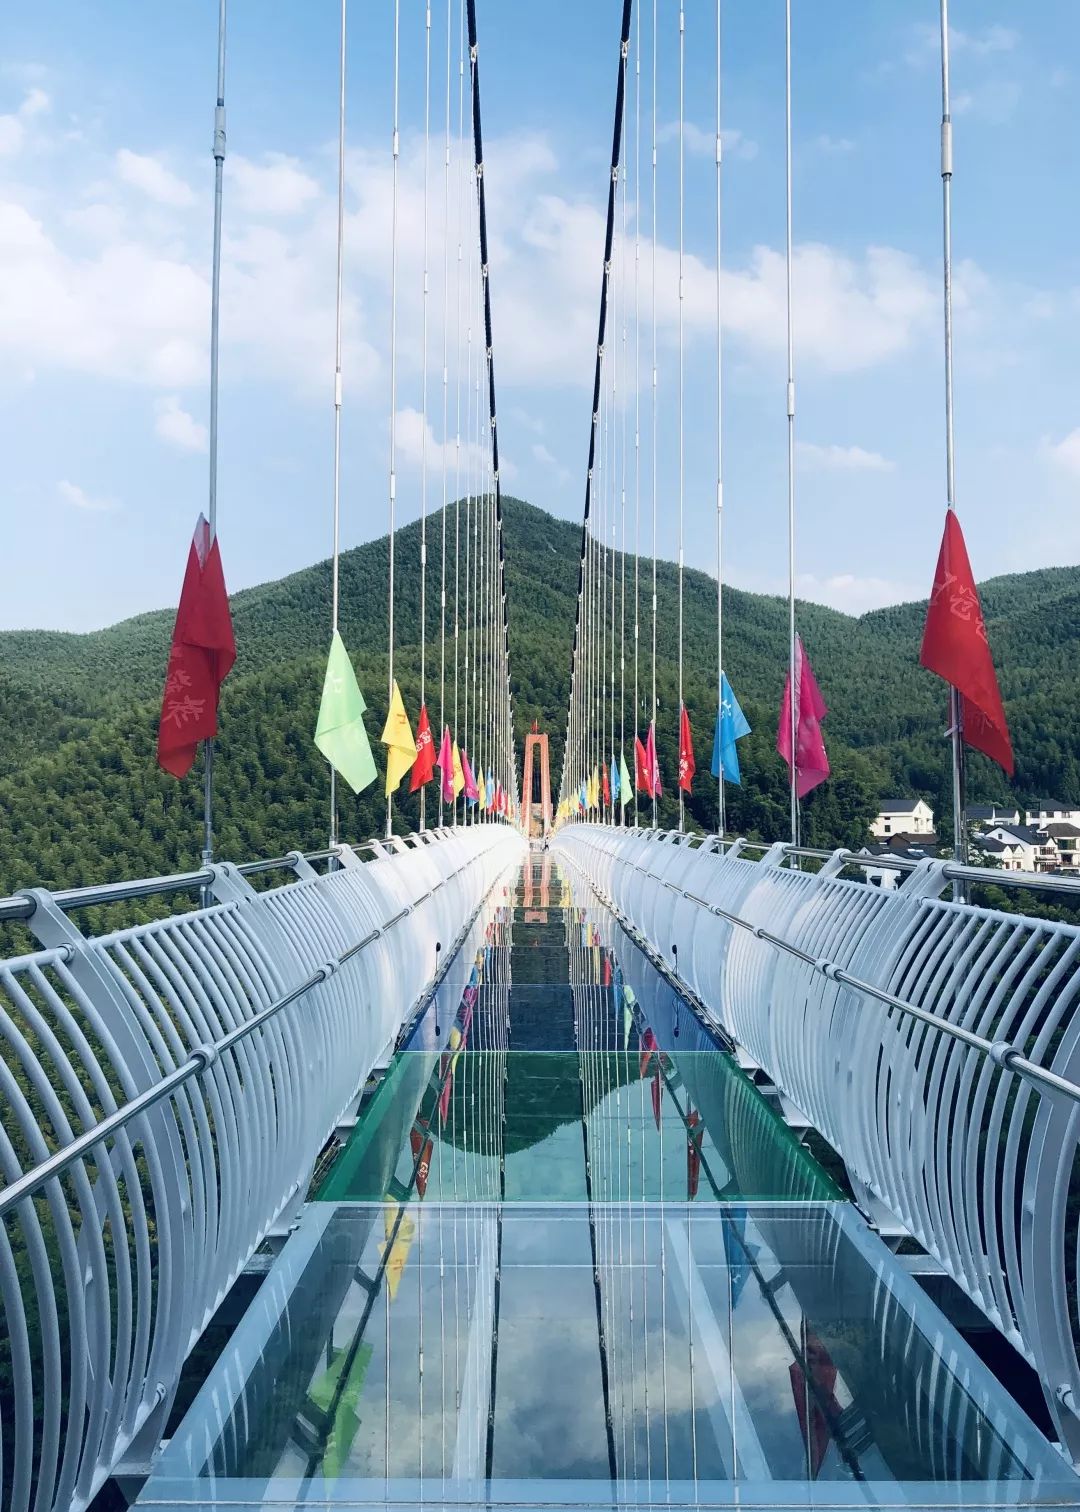 玻璃景观桥6月22日开始营业啦~惊险刺激的玻璃桥白虎山旅游度假区